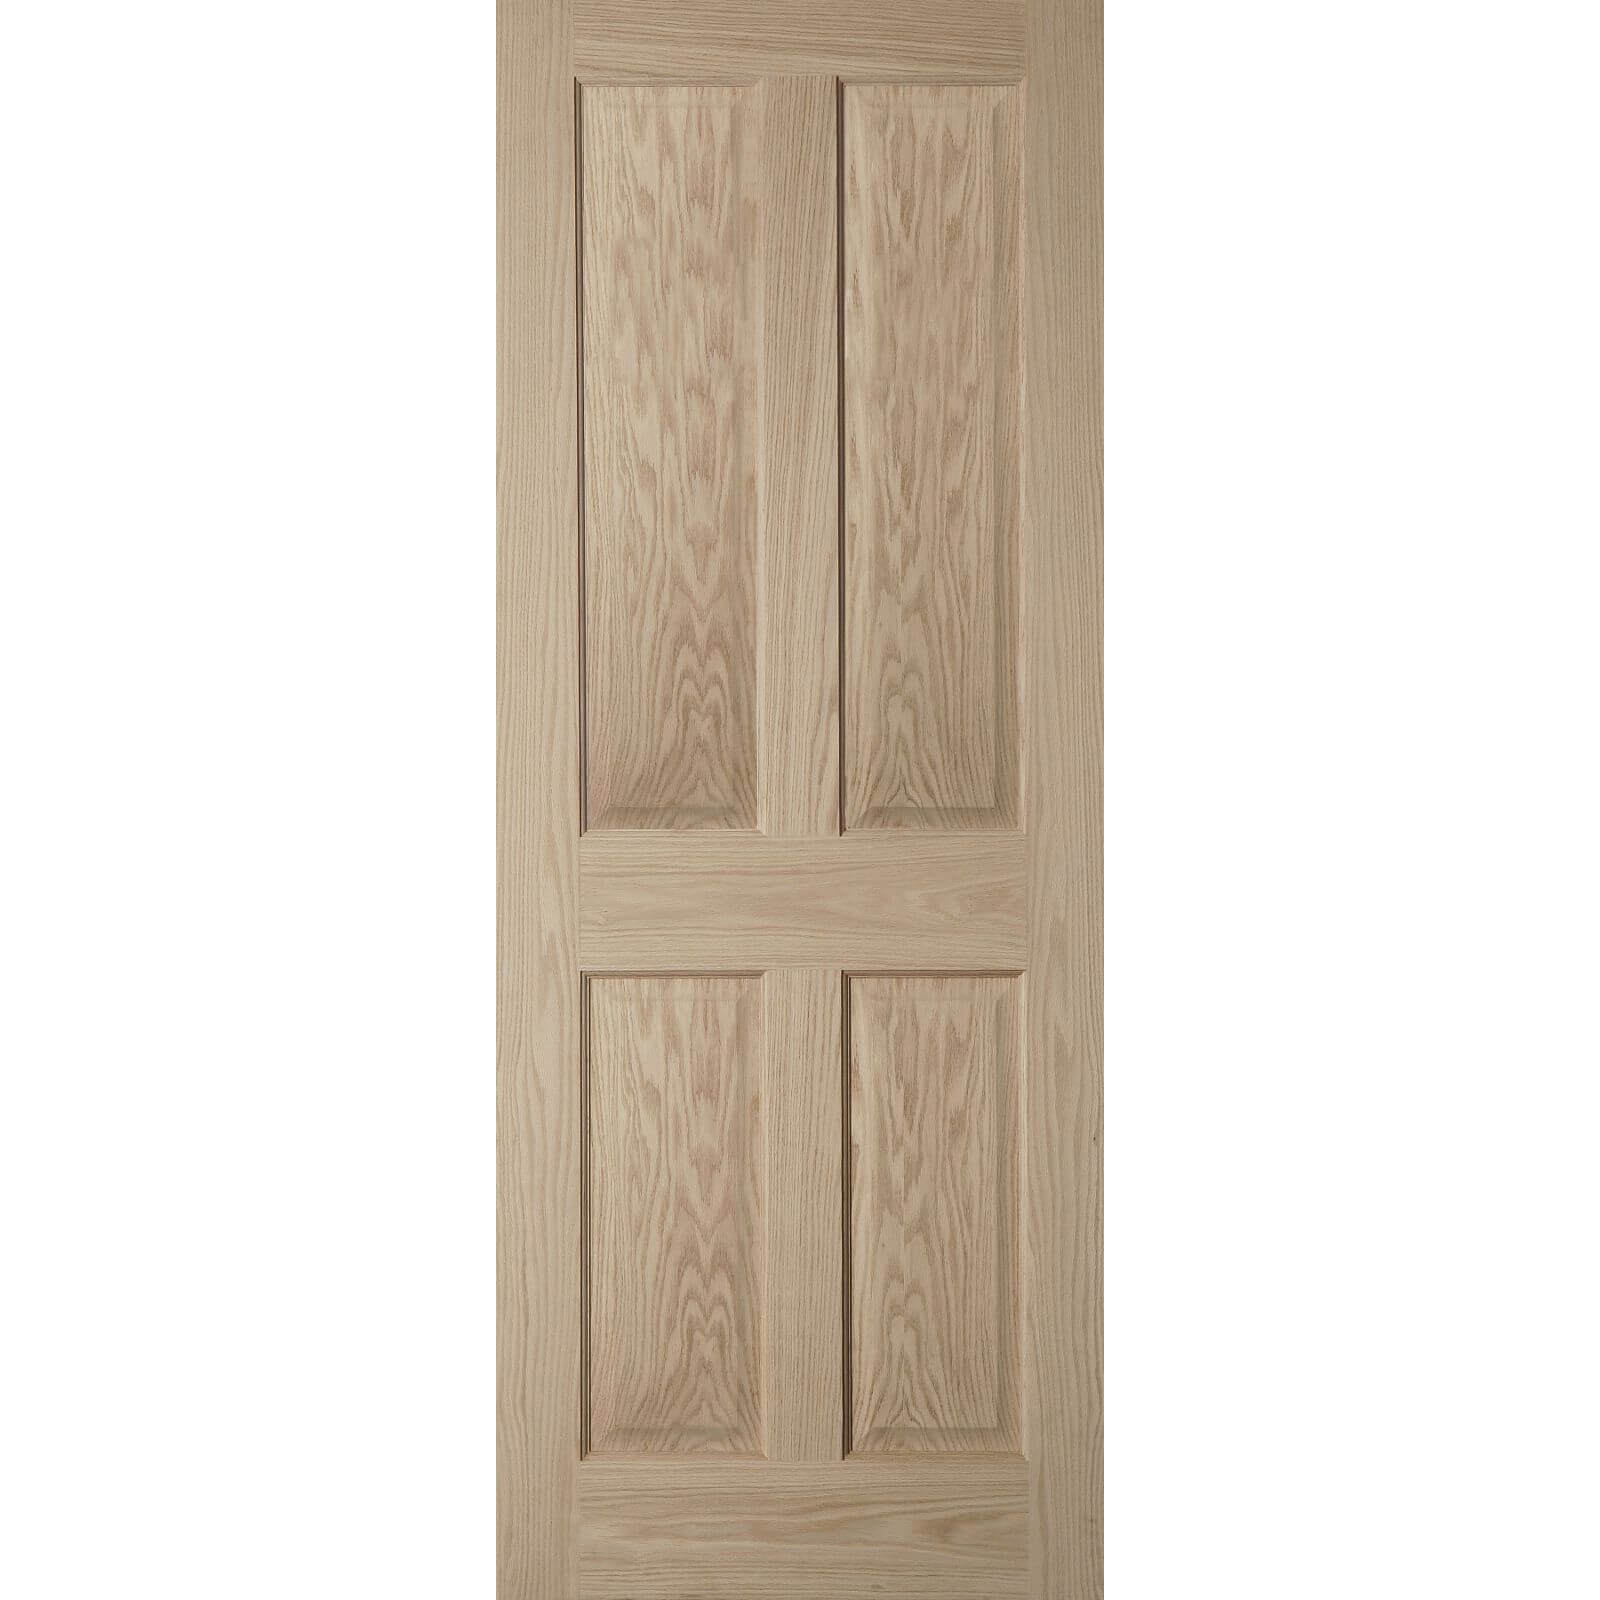 4 Panel Oak Veneer Internal Fire Door - 826mm Wide